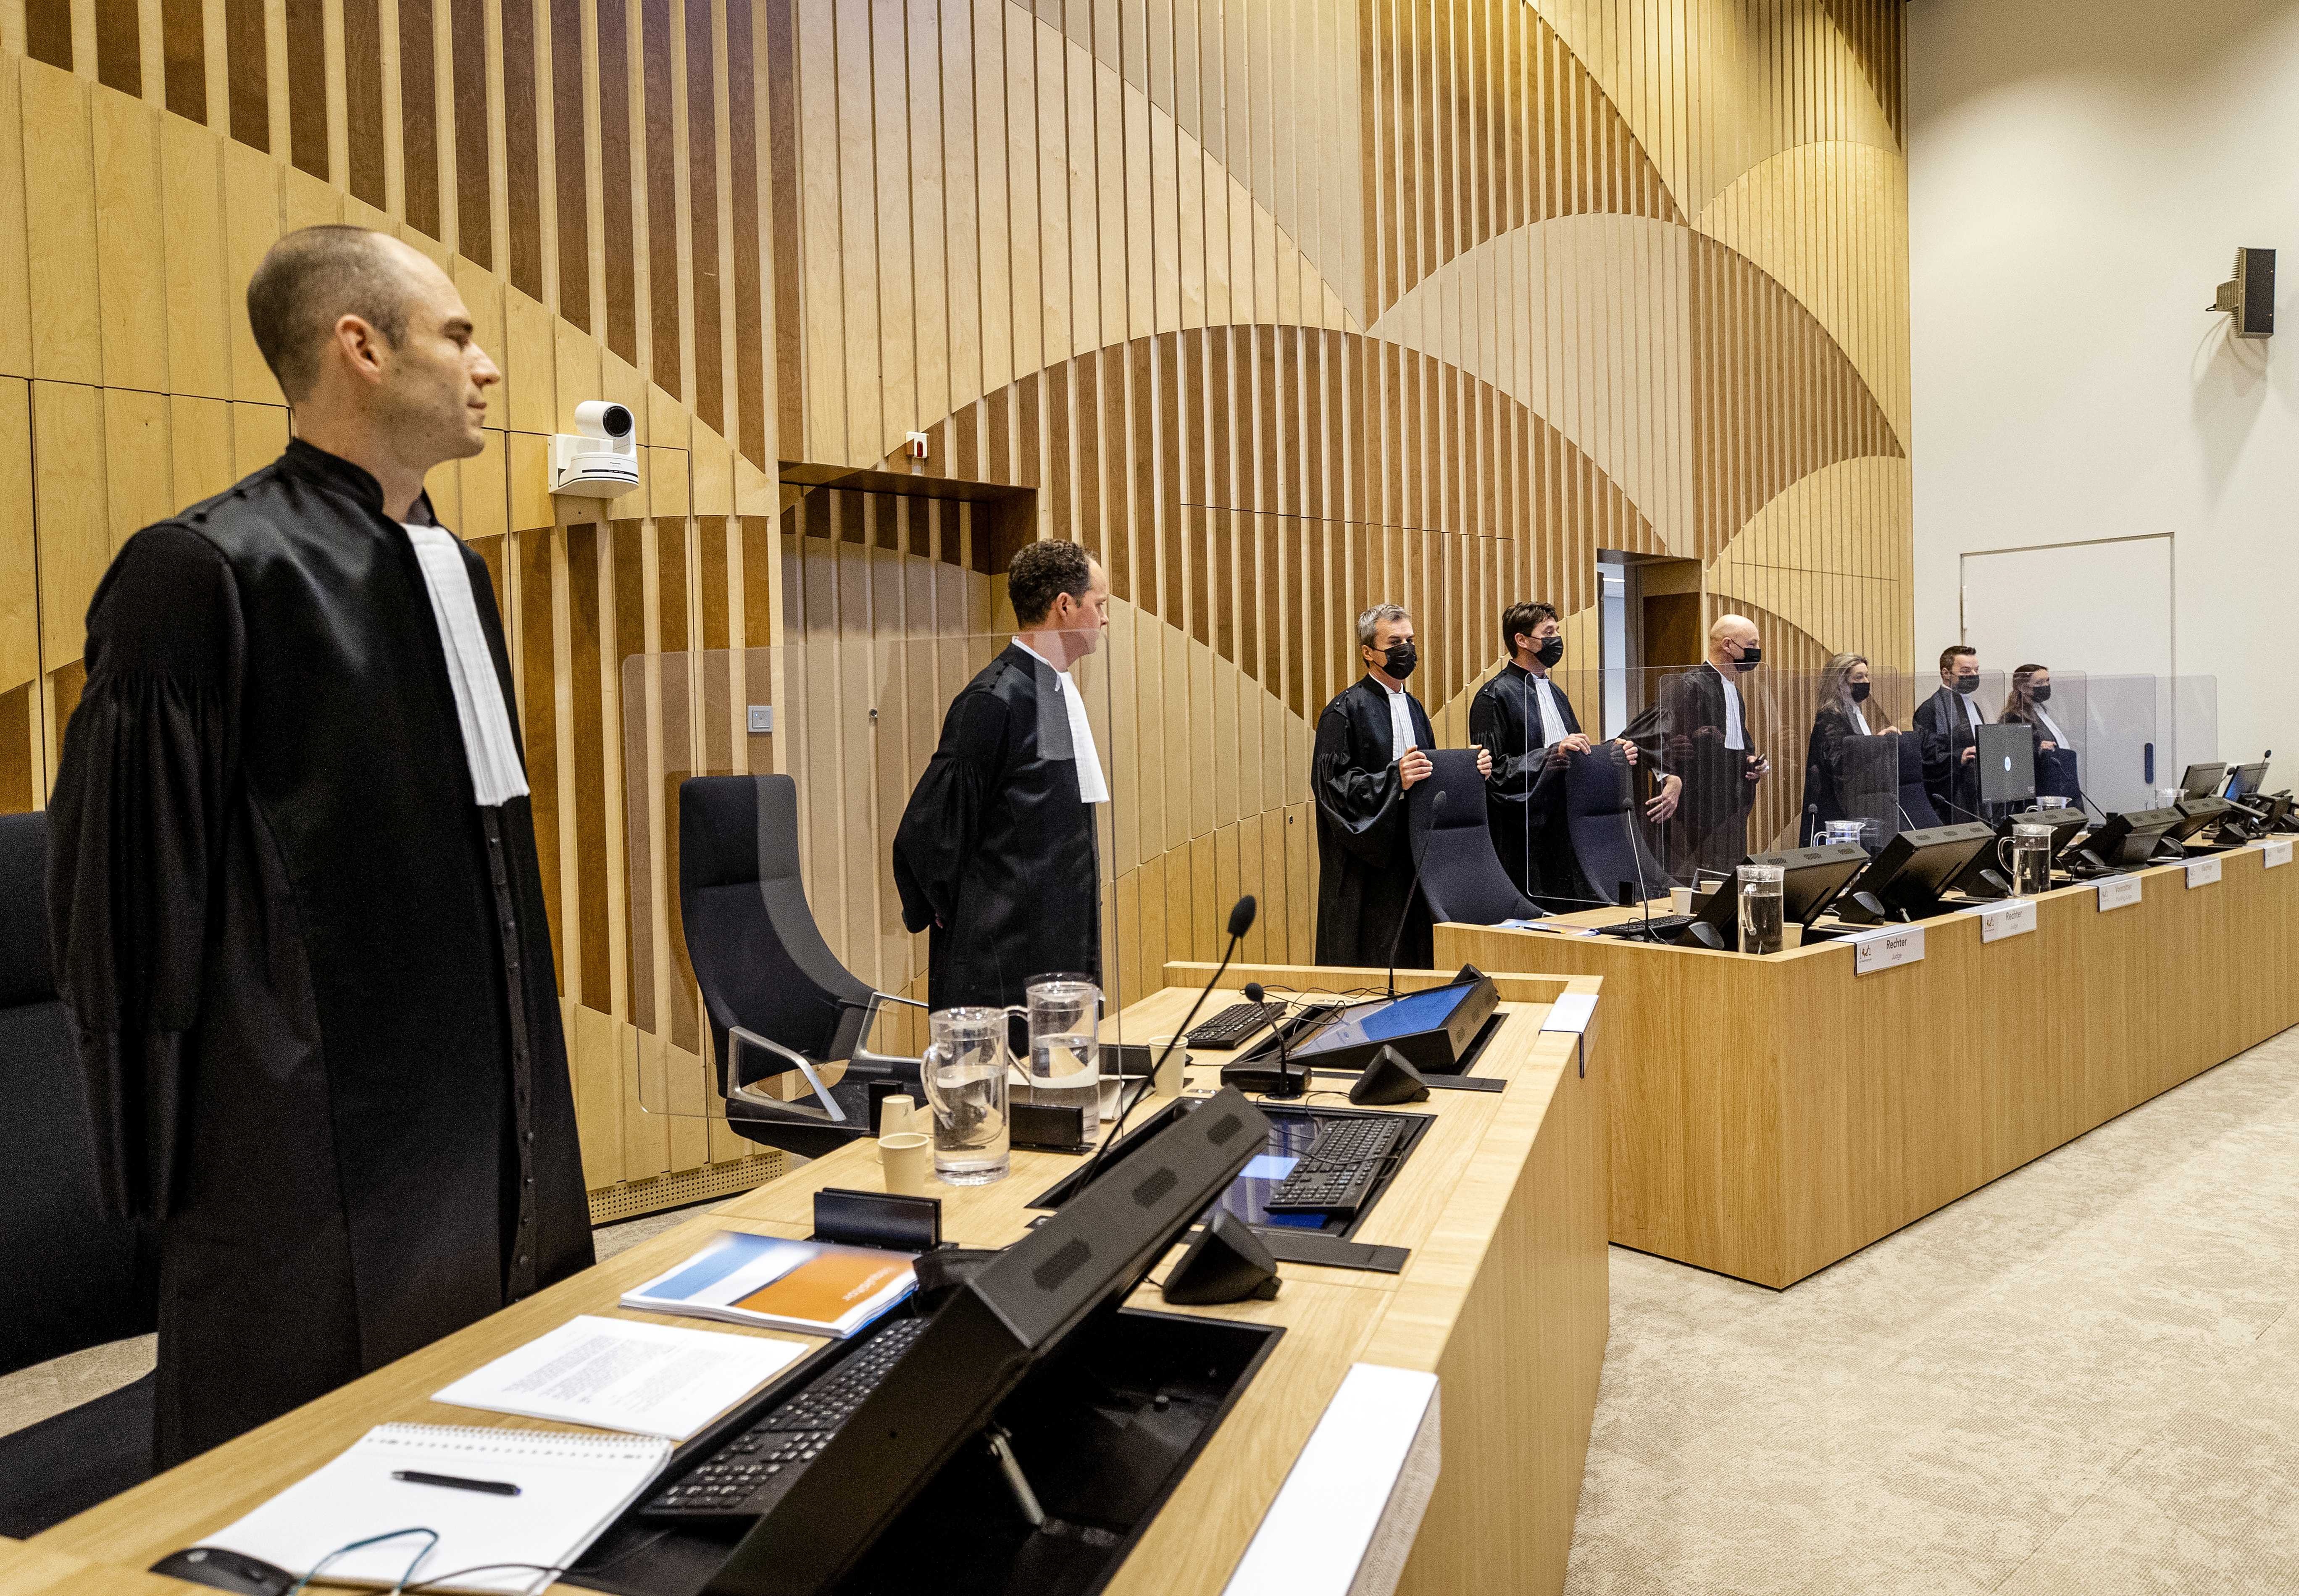 Vista del Tribunal en el que se ha celebrado el juicio penal sobre el derribo del vuelo MH17 de Malaysia Airlines, en el Complejo Judicial de Schiphol (JCS) en Badhoevedorp, cerca de Amsterdam, Países Bajos. EFE/EPA/SEM VAN DER WAL
